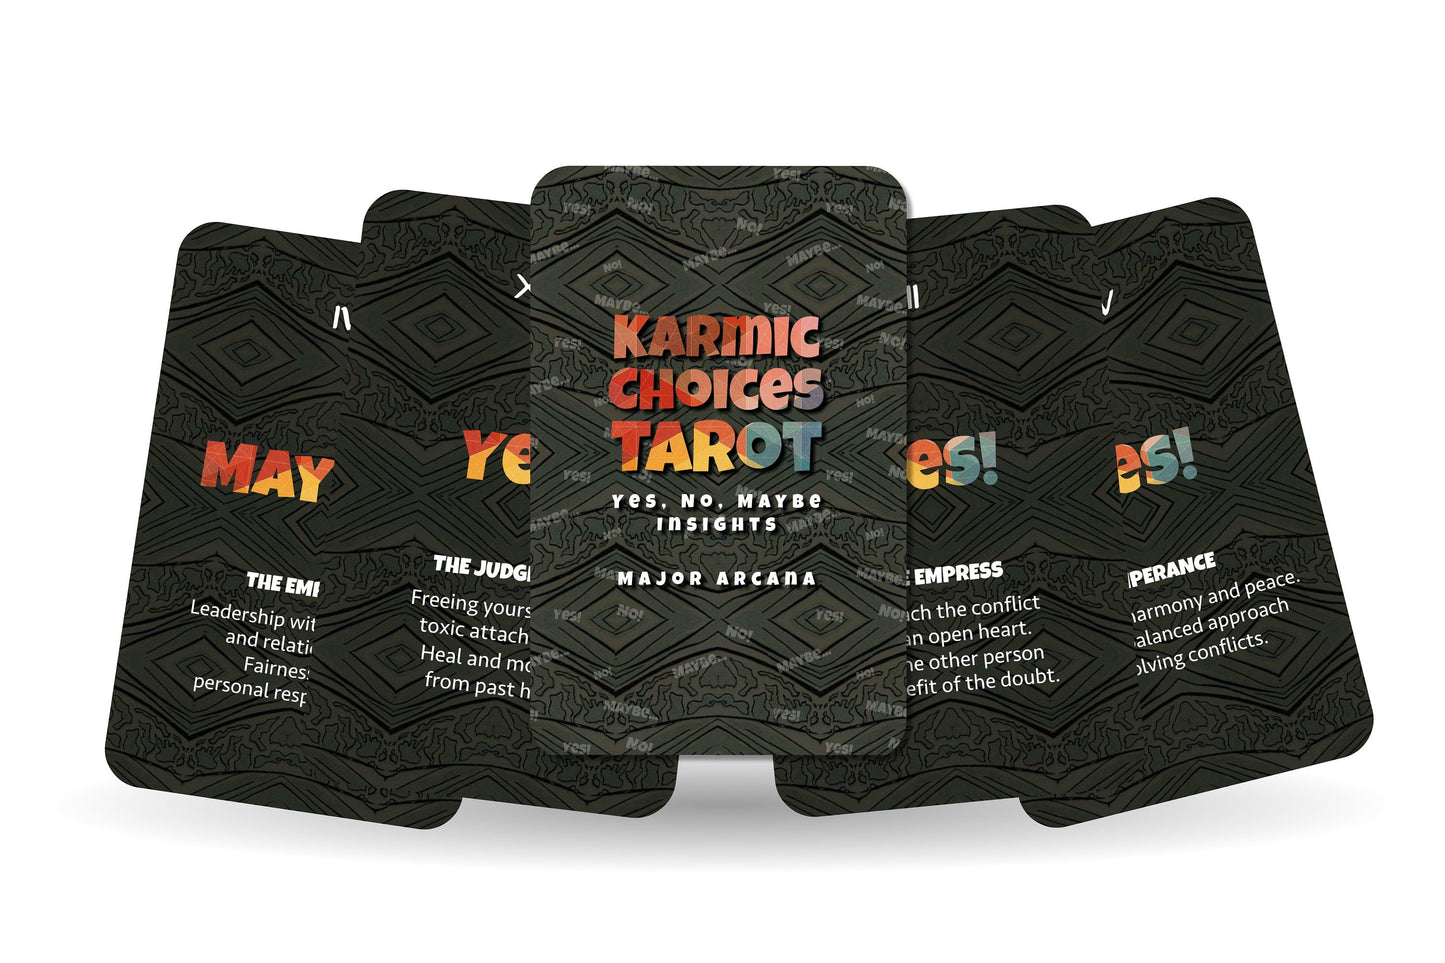 Tarot Cards - Karmic Choices Tarot - Yes, No, Maybe Insights - Major Arcana Tarot Cards - Divination Tool - Tarot Deck - Decision Tarot